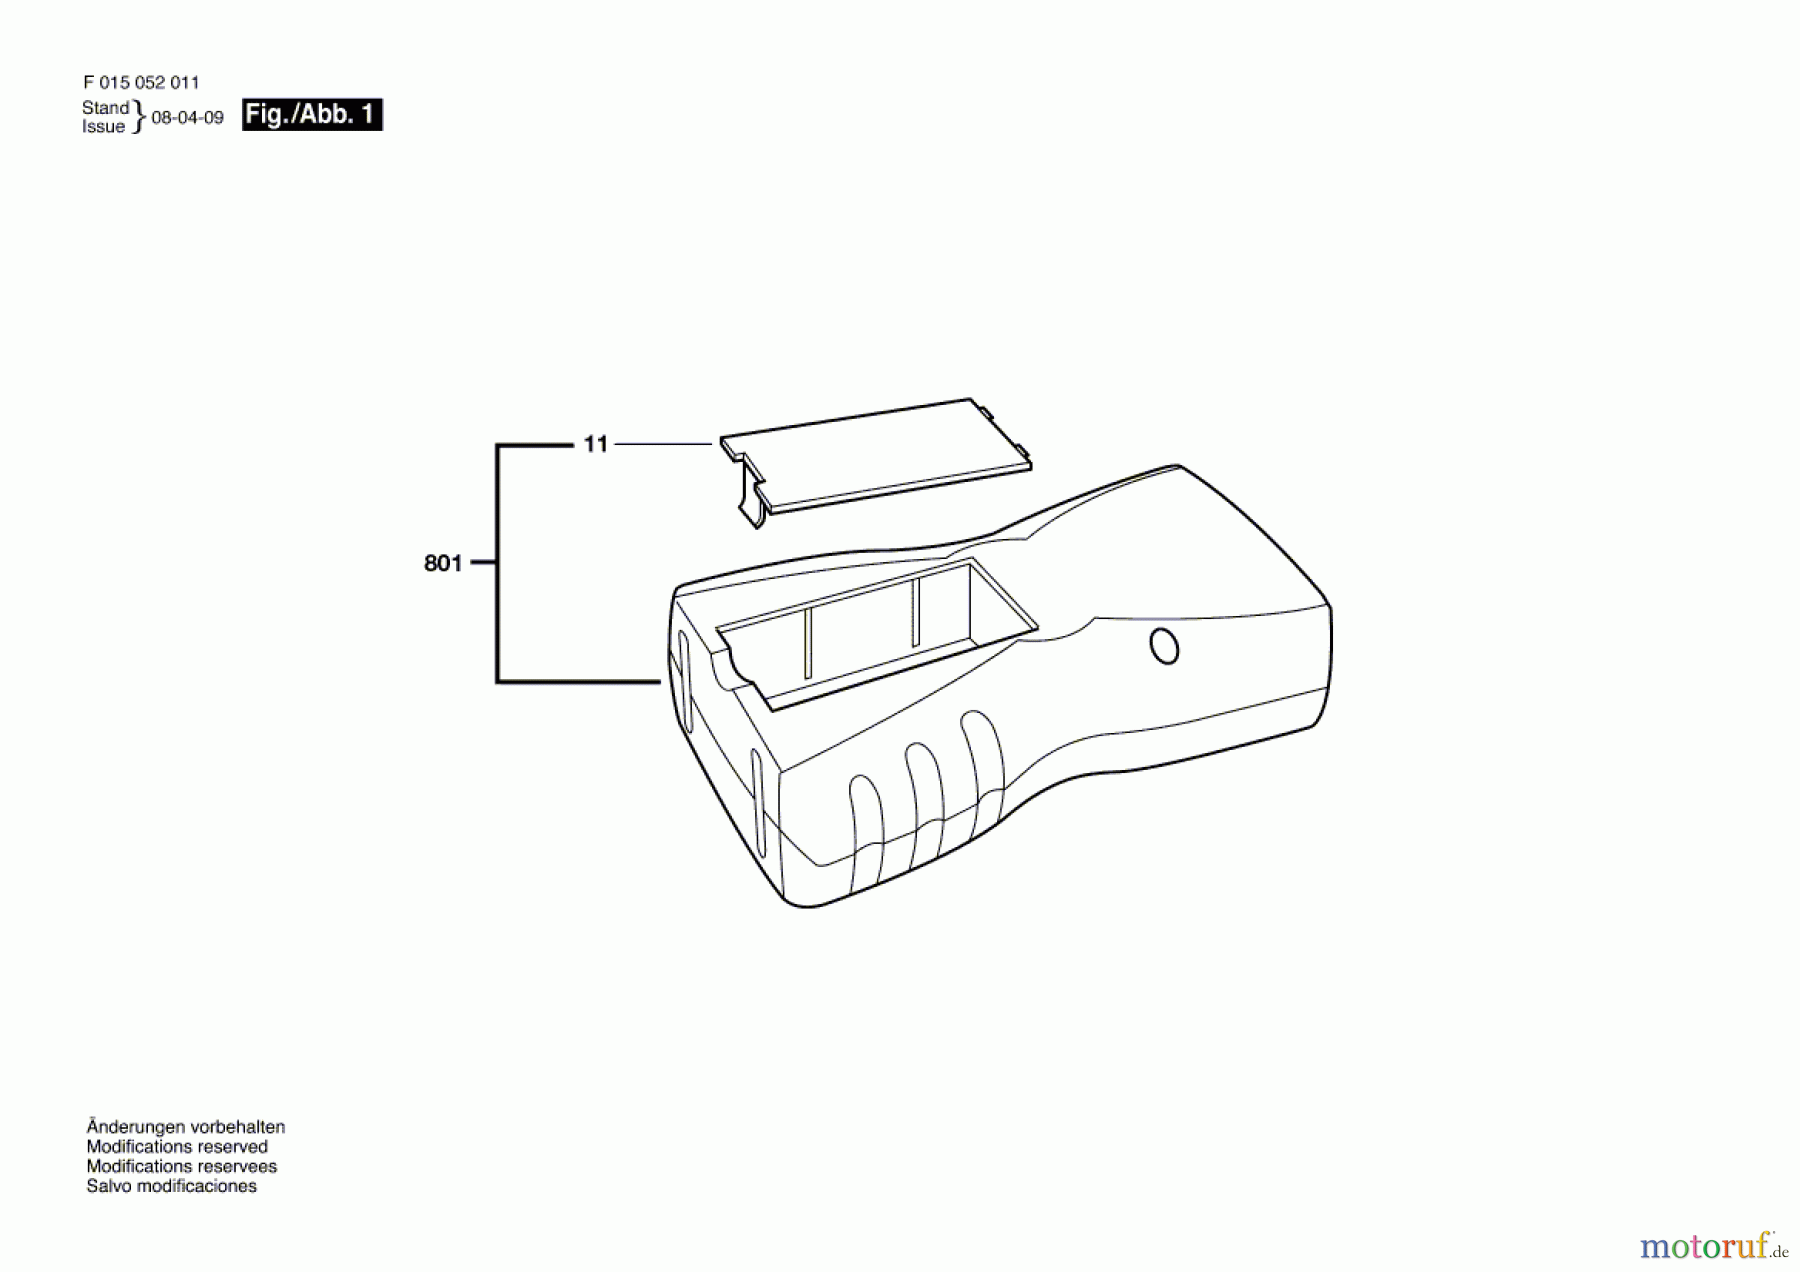  Bosch Werkzeug Ultraschallmessgerät 0520 Seite 1